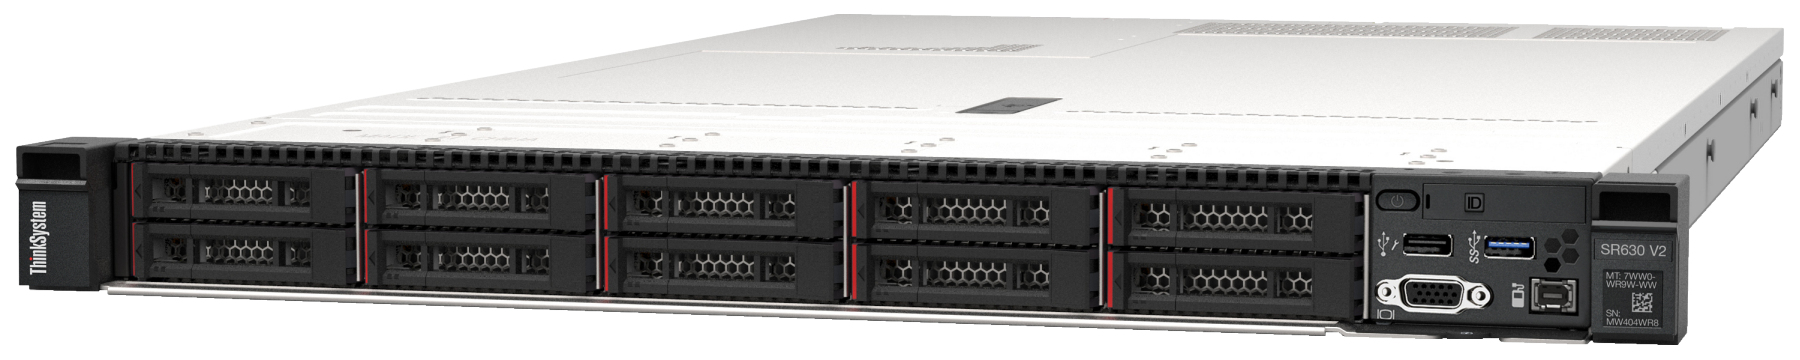 Сервер Lenovo ThinkSystem SR630 V2 (7Z71A05FEA). Фиксированная комплектация сервера